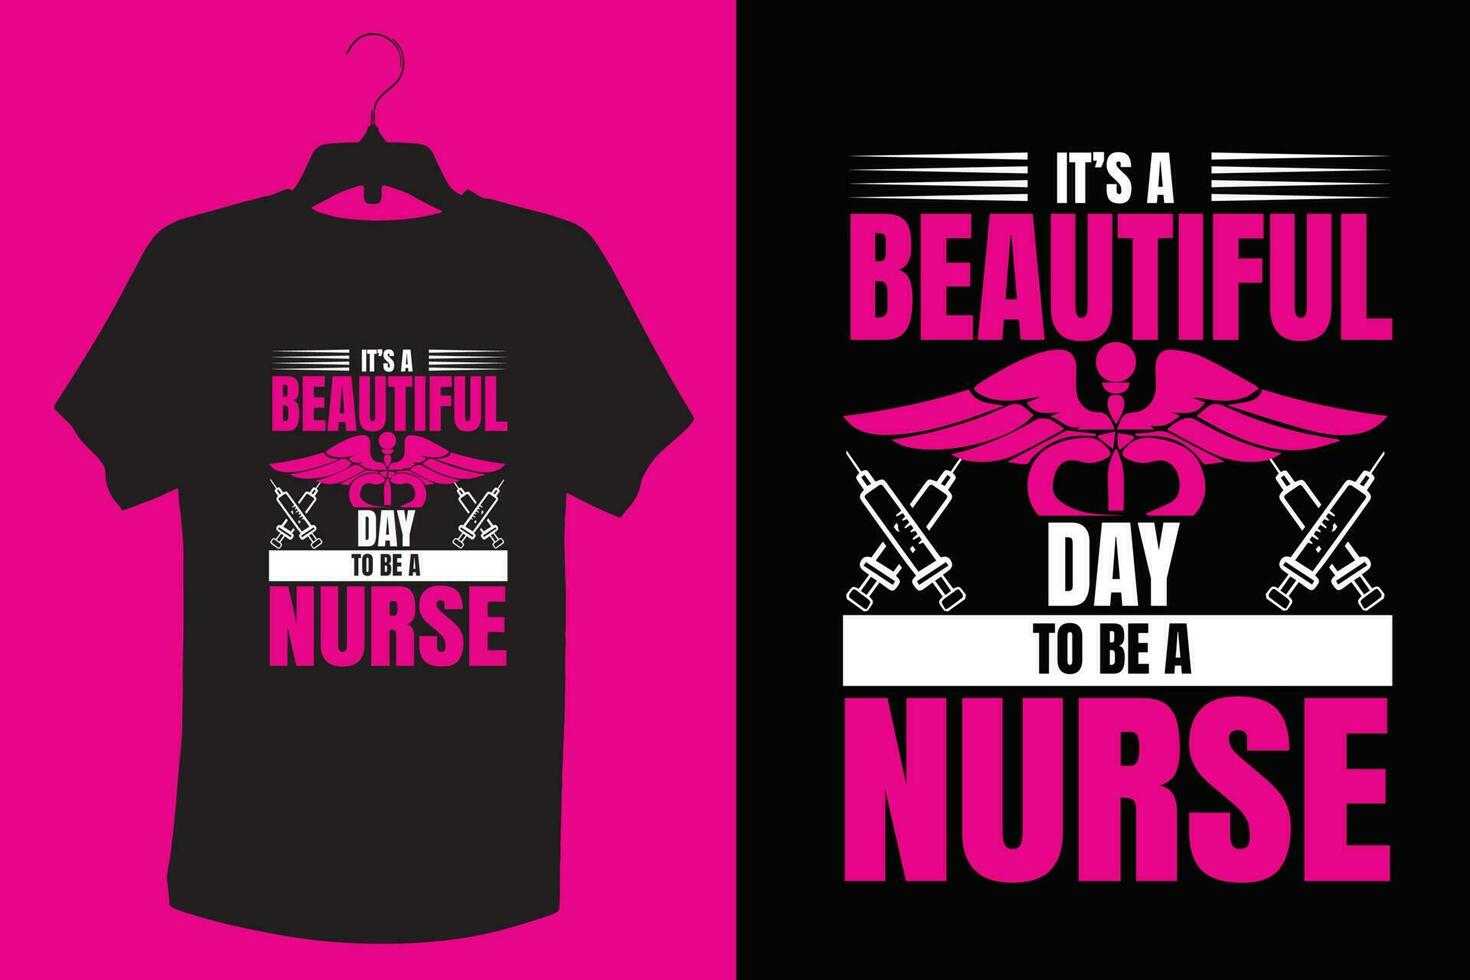 enfermero camiseta diseño. vector